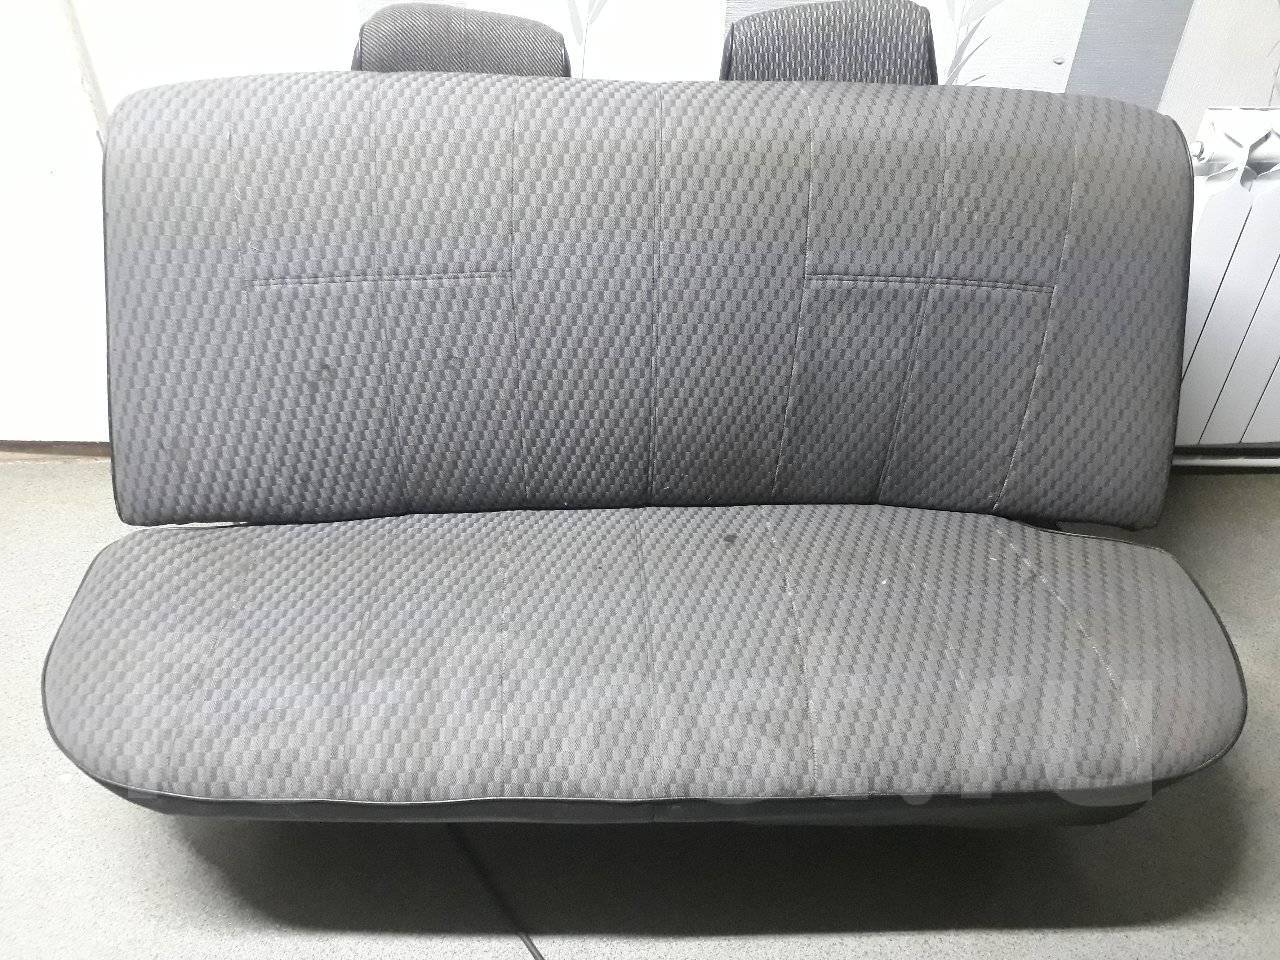 Задние сиденья ВАЗ 2107 тюнинг